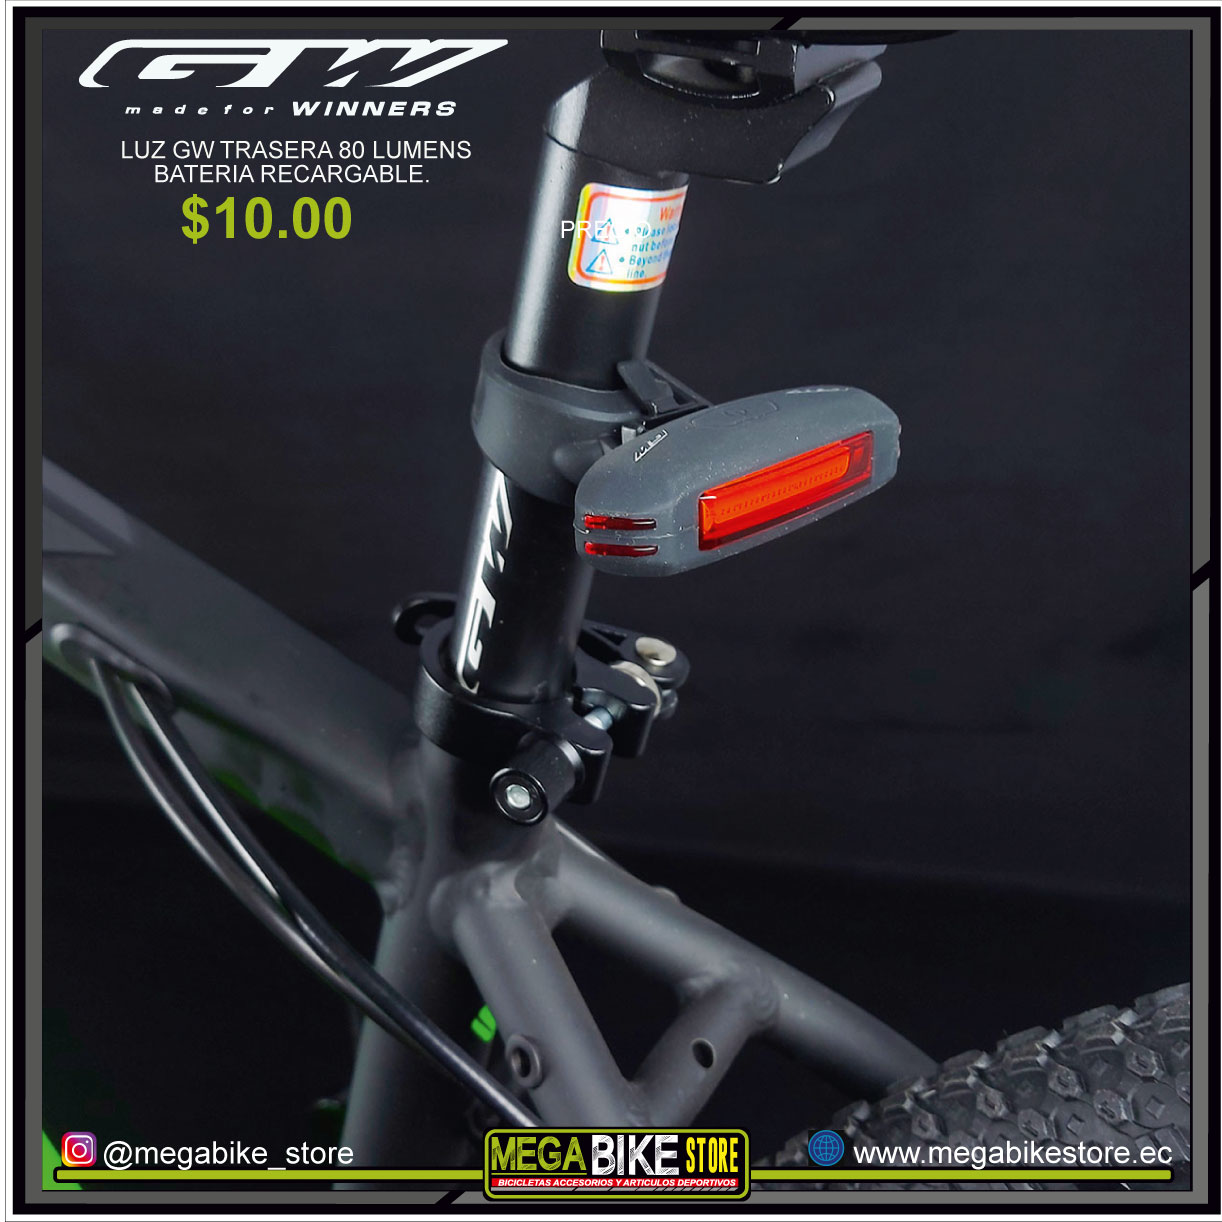 Luz LED Bicicleta Aduro 2 en 1 Frontal y Posterior